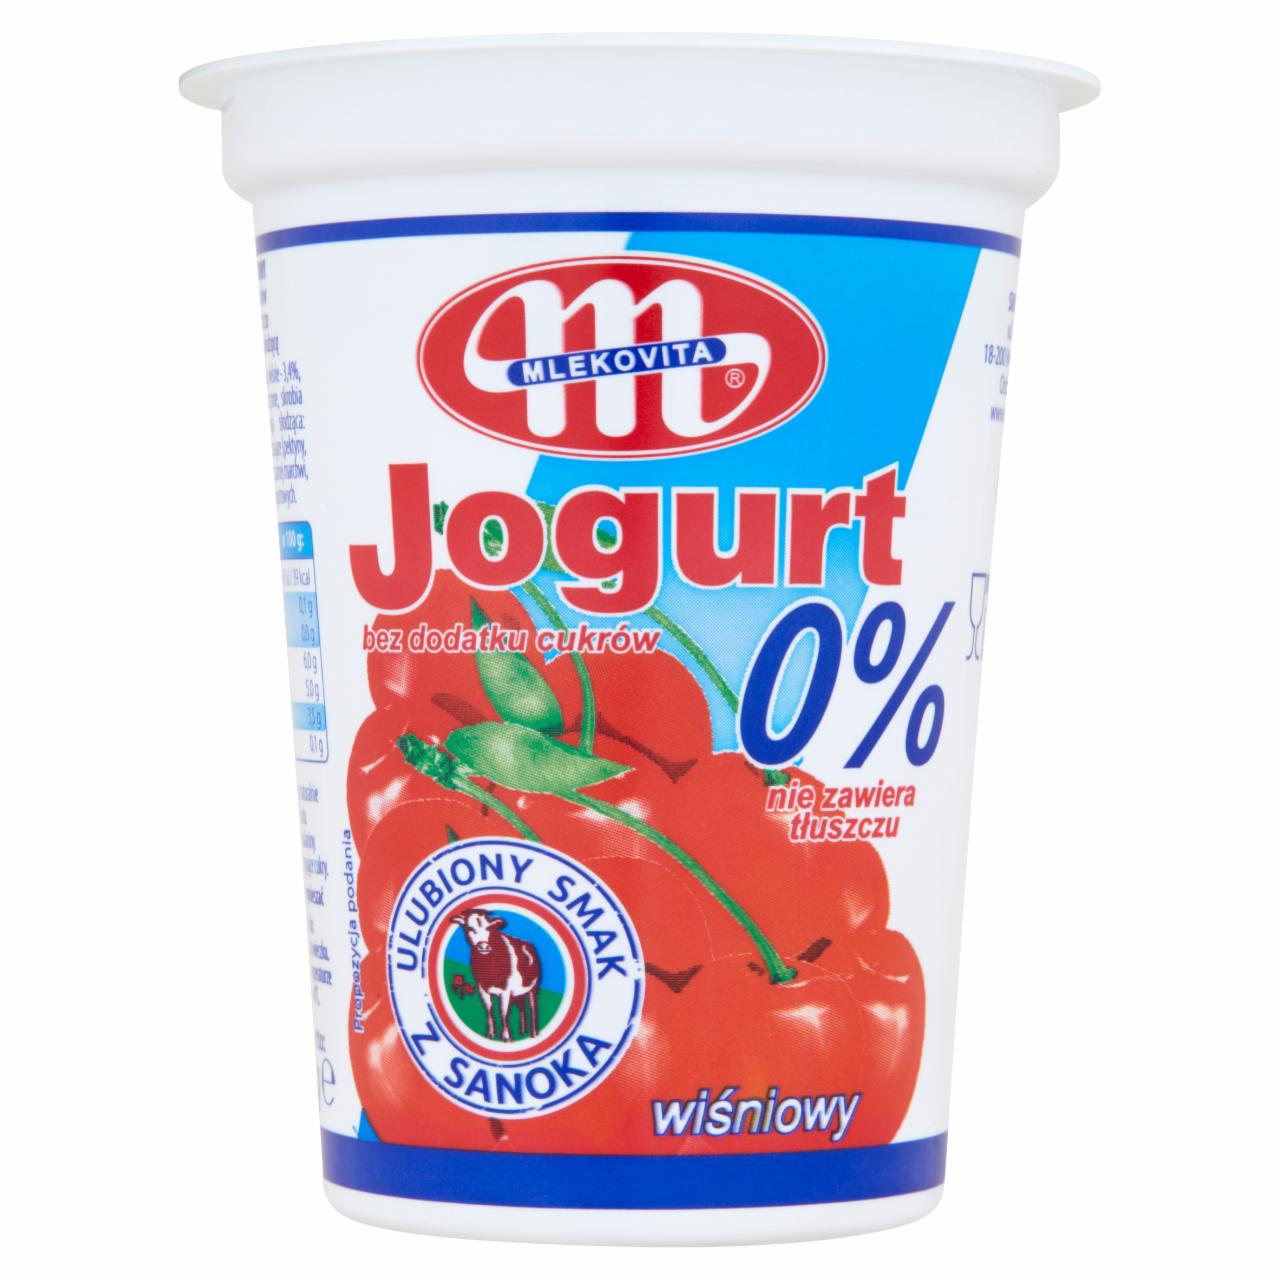 Zdjęcia - Mlekovita Jogurt 0% wiśniowy 400 g